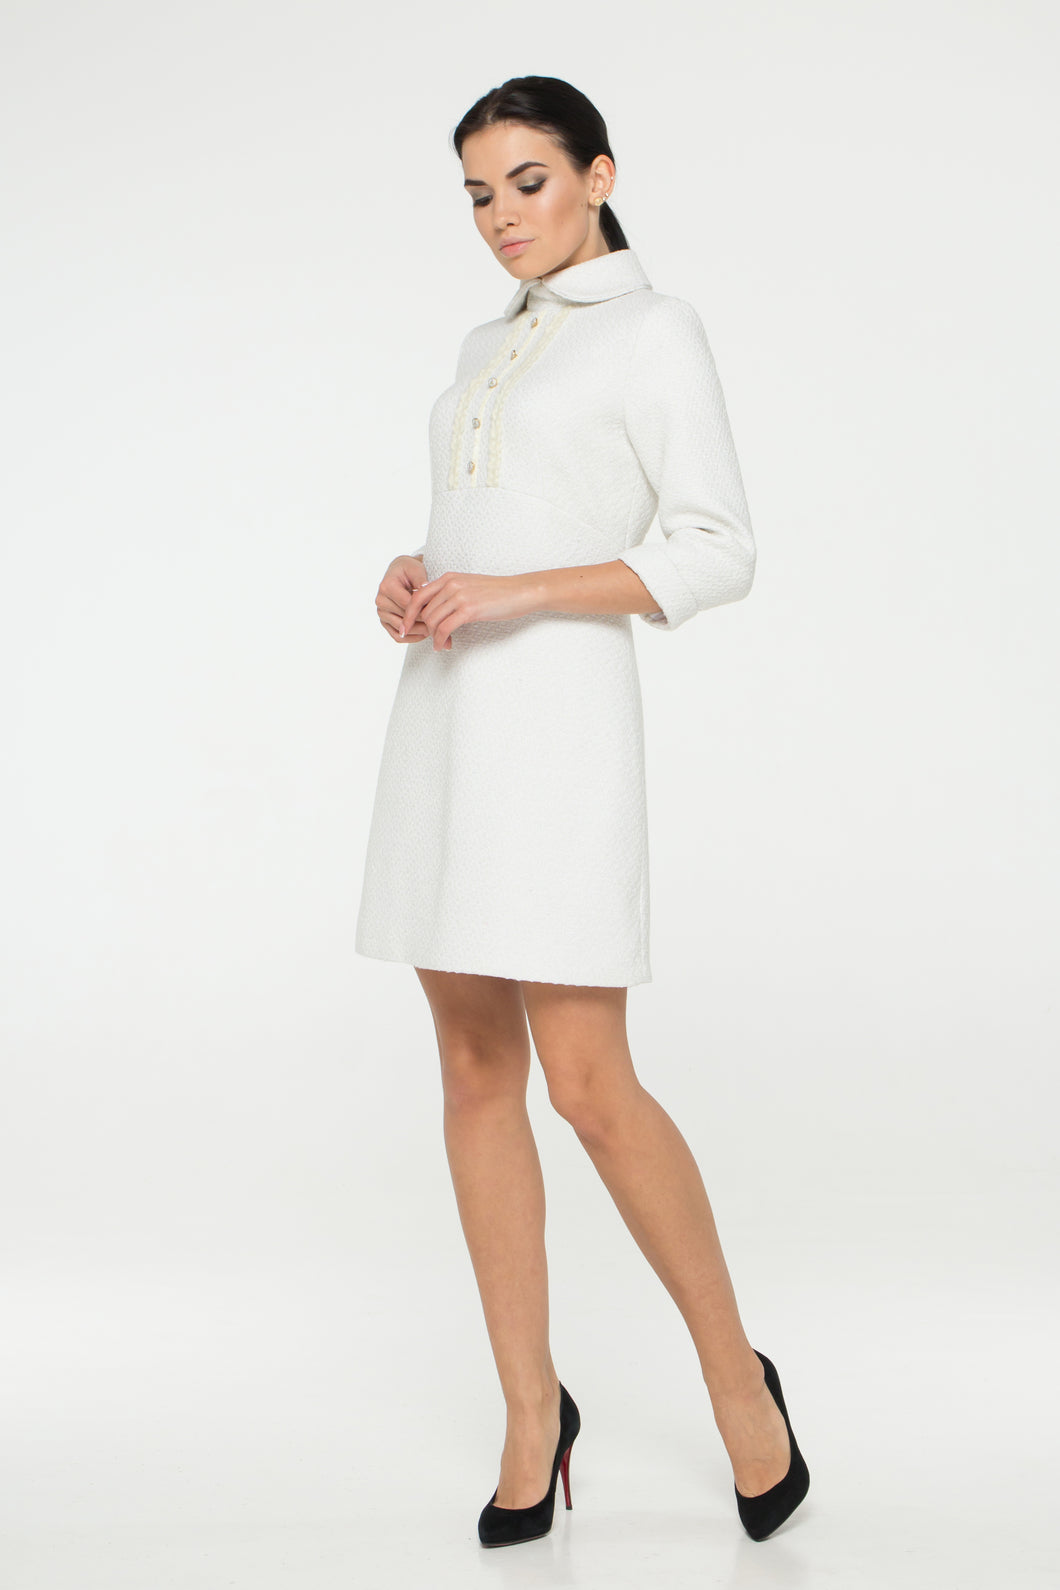 White tweed dress